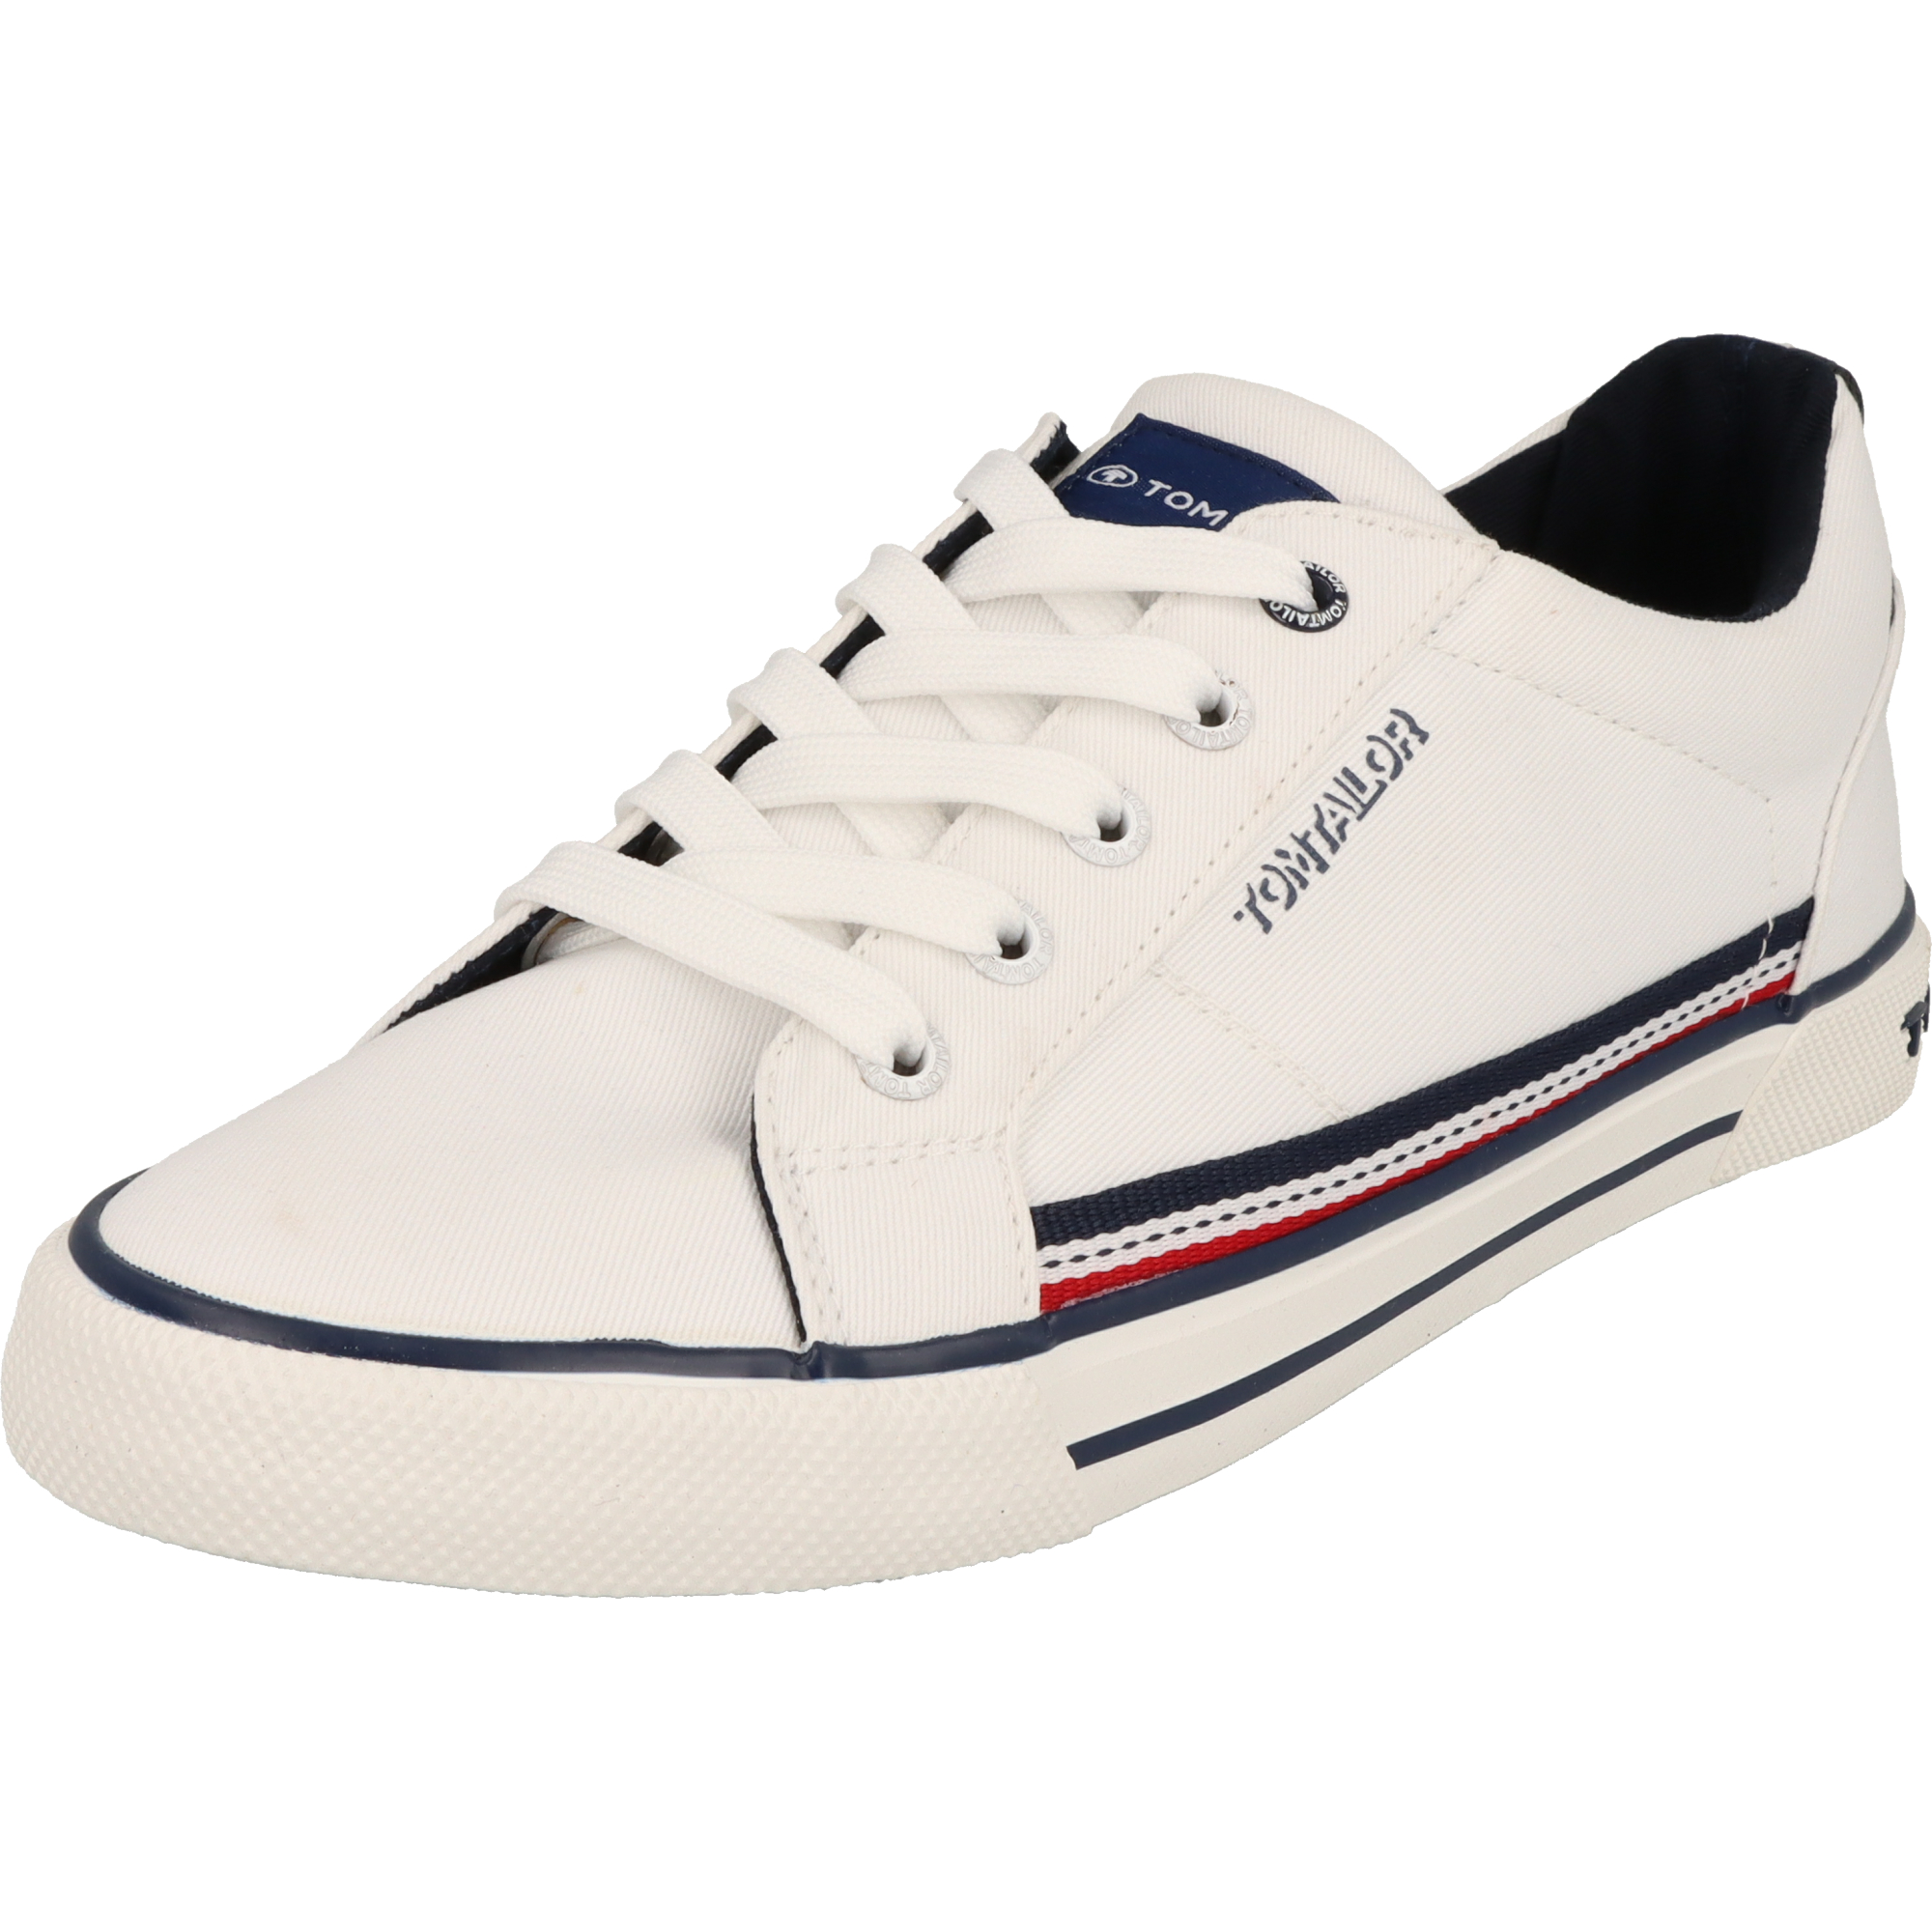 Tom Tailor Jungen Schuhe 5370290006 Schnürschuhe Sneaker Halbschuhe White